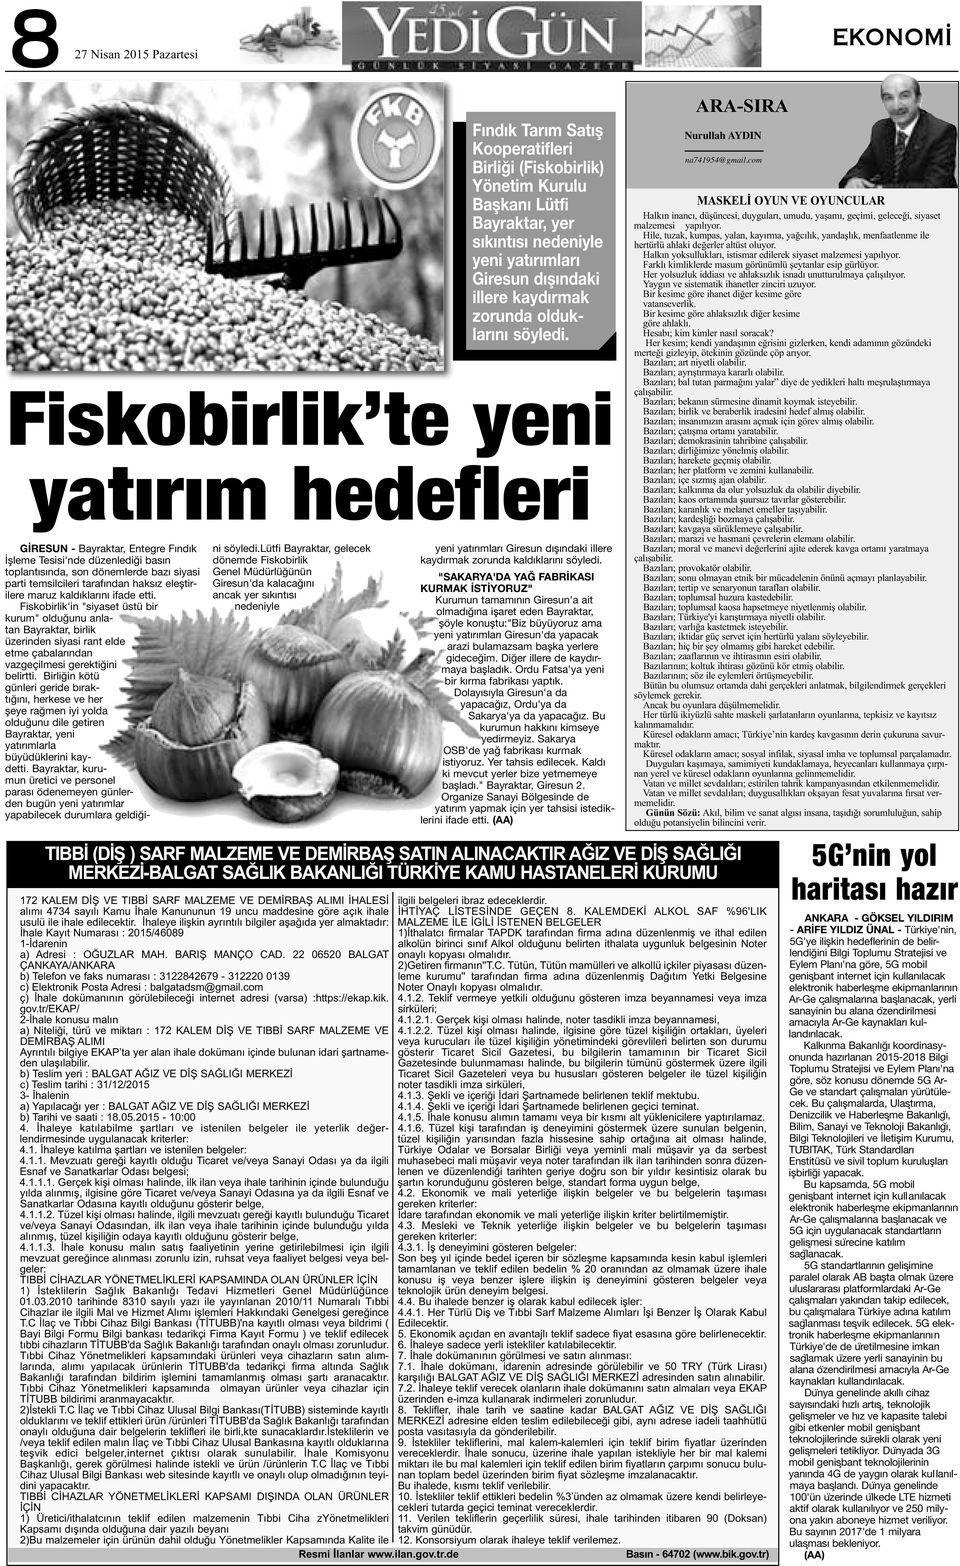 Fiskobirlik'in "siyaset üstü bir kurum" olduğunu anlatan Bayraktar, birlik üzerinden siyasi rant elde etme çabalarından vazgeçilmesi gerektiğini belirtti.